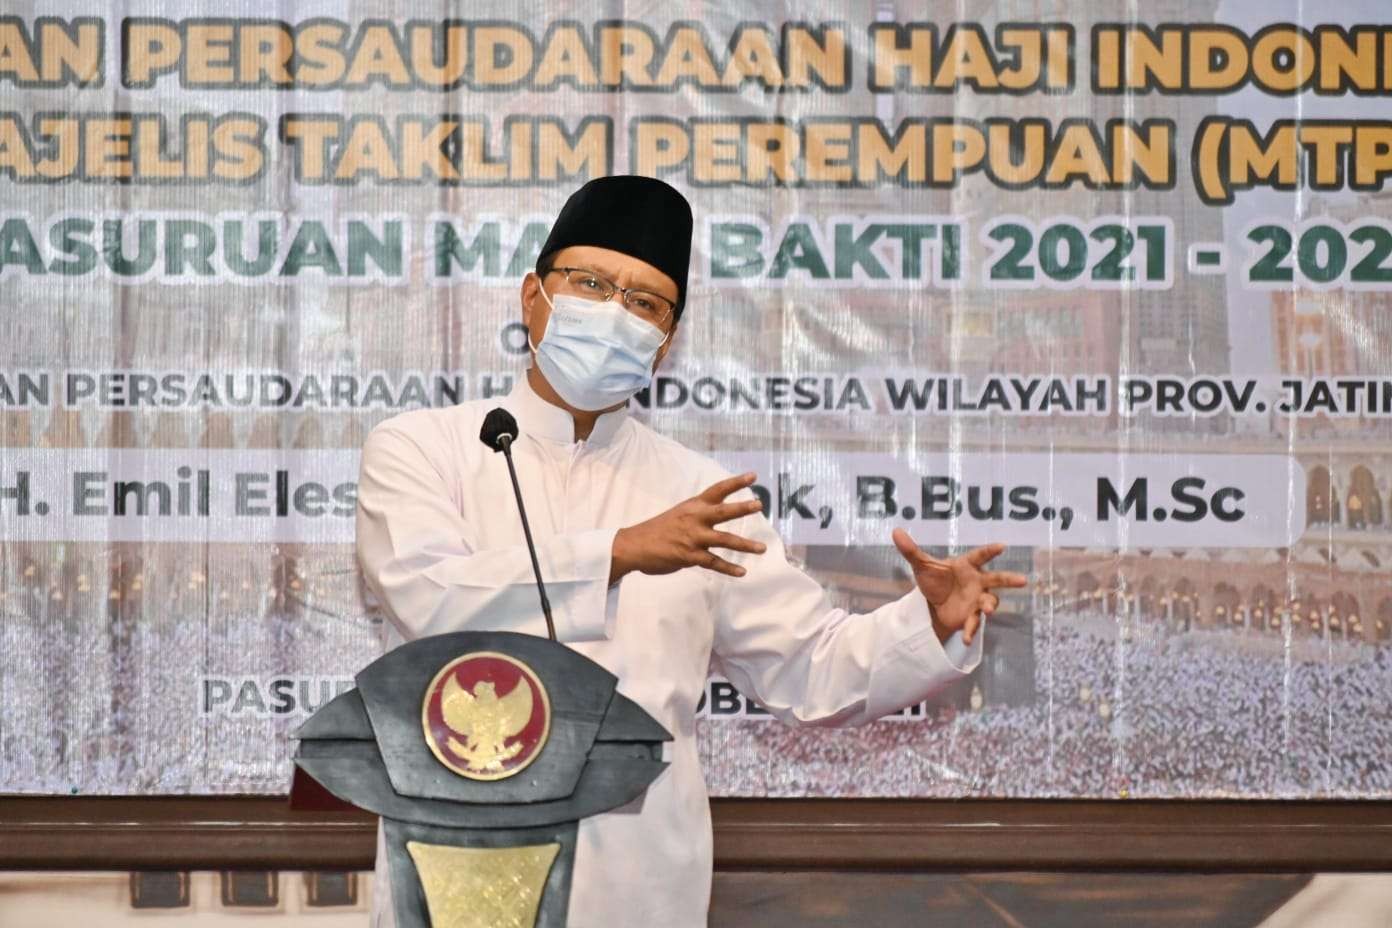 Walikota Pasuruan Saifullah Yusuf, akrab disapa Gus Ipul, menjelaskan konsep Kota Madinah ke Ikatan Persaudaraan Haji. (Foto: Istimewa)